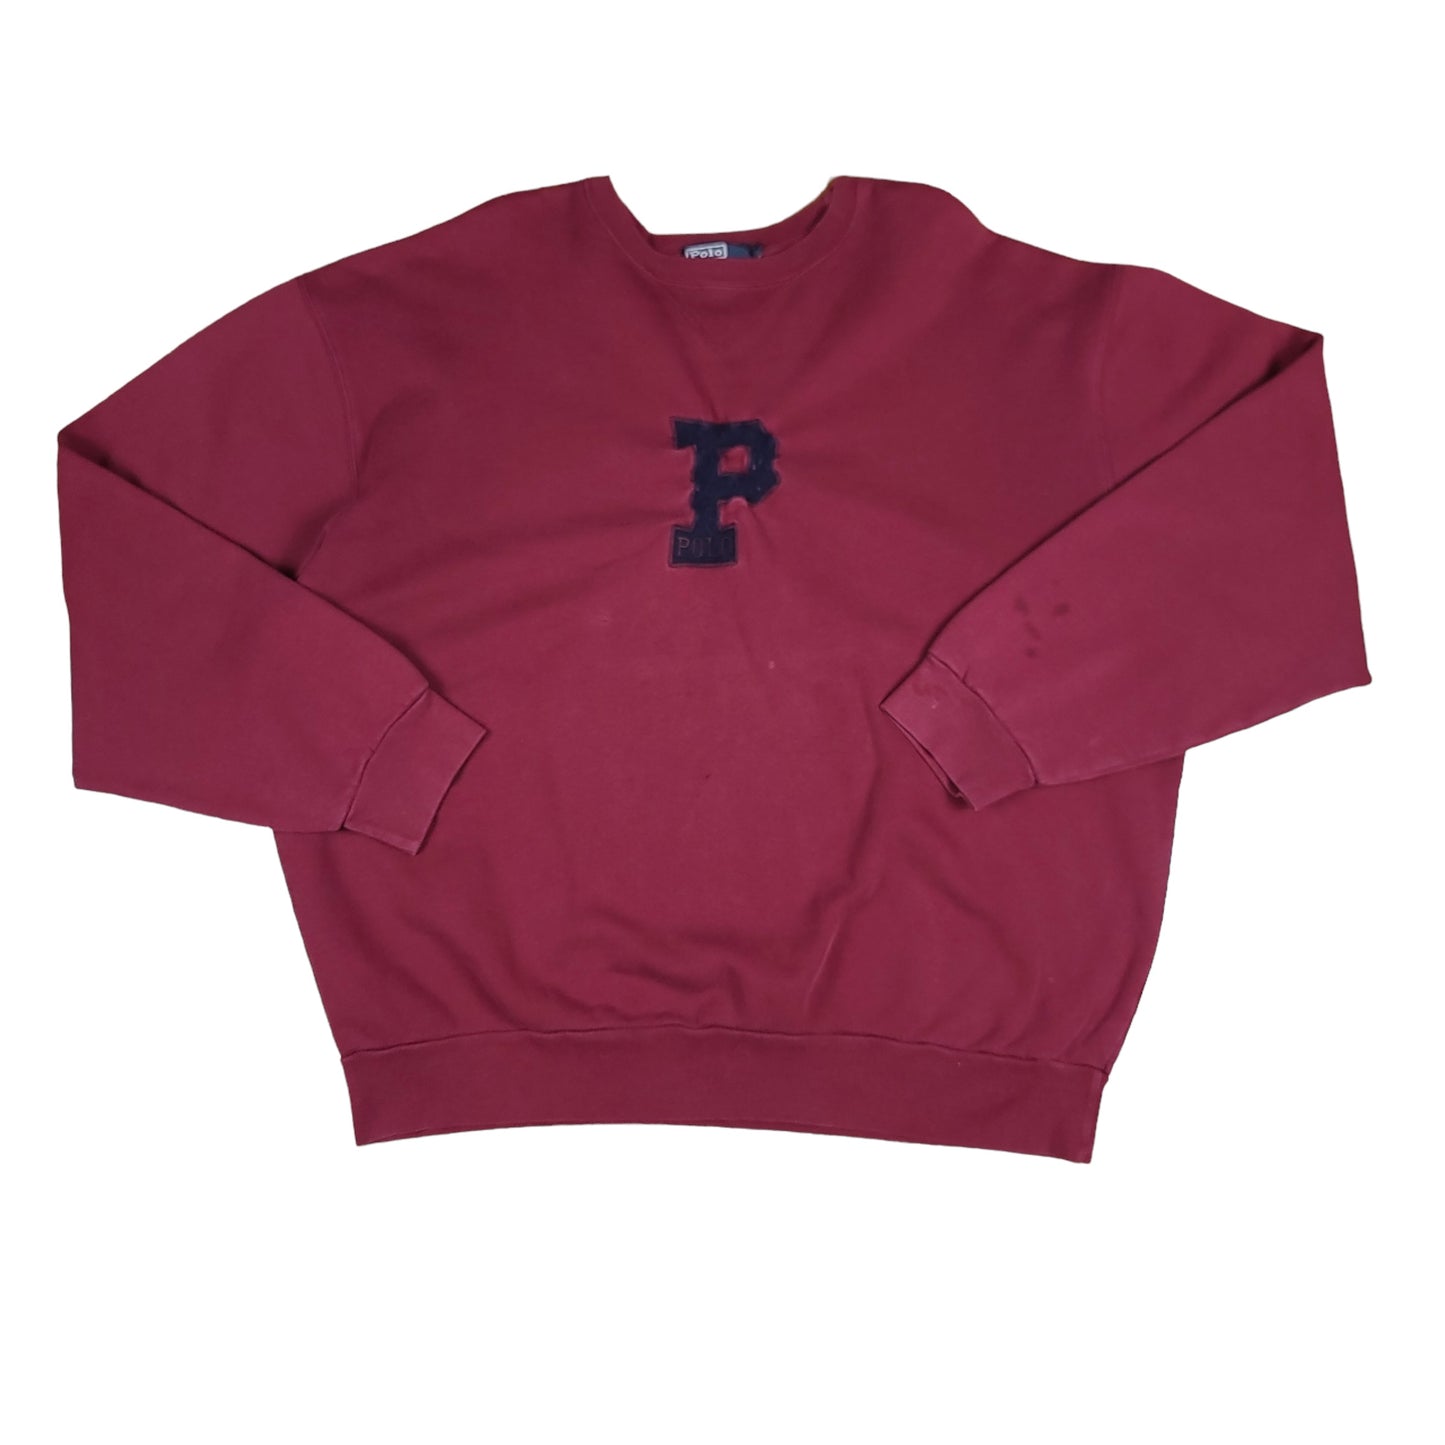 Polo Ralph Lauren Maroon "P" Sweatshirt